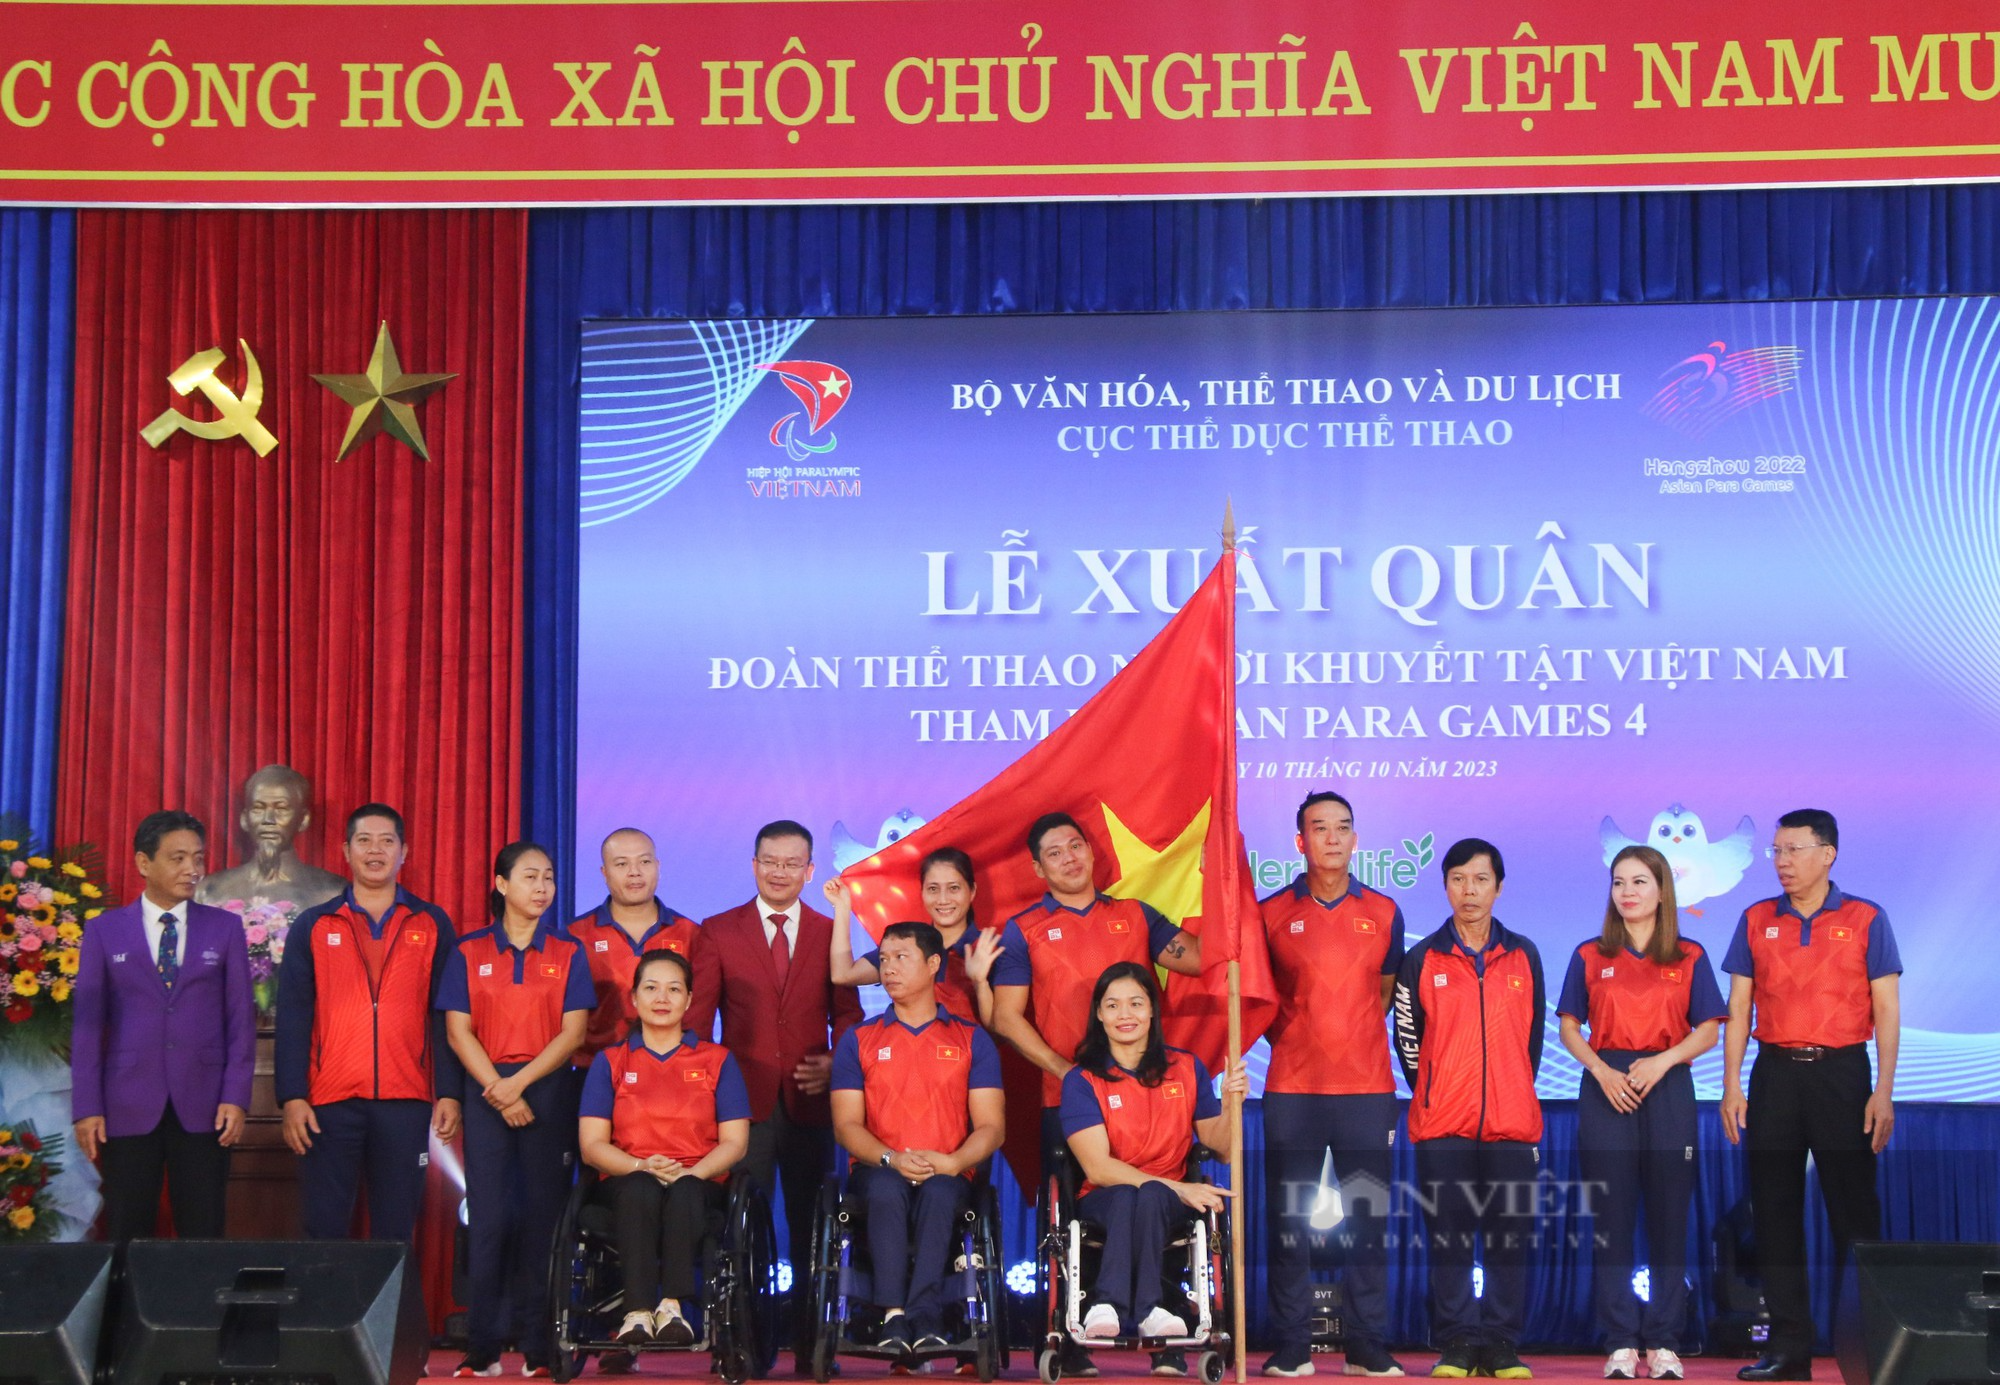 VĐV khuyết tật Việt Nam với giấc mơ Asian Para Games 4 - Ảnh 1.